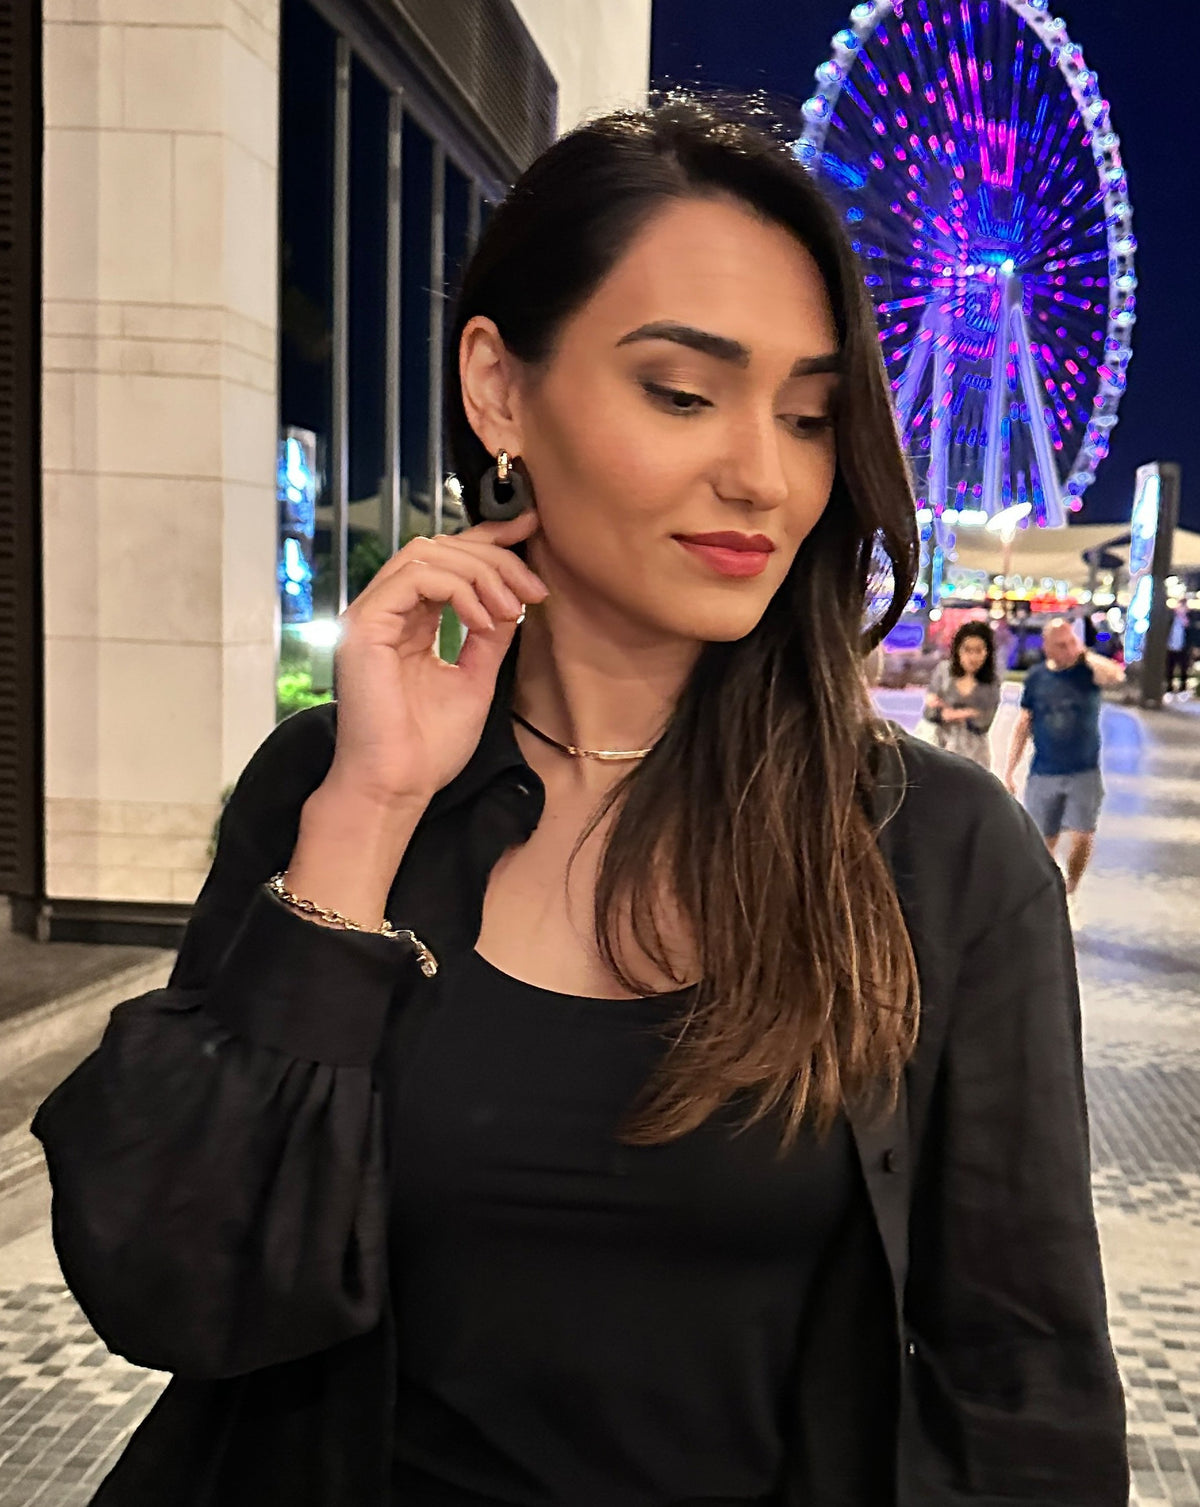 Darien earrings in Black color with gold hoops, on model